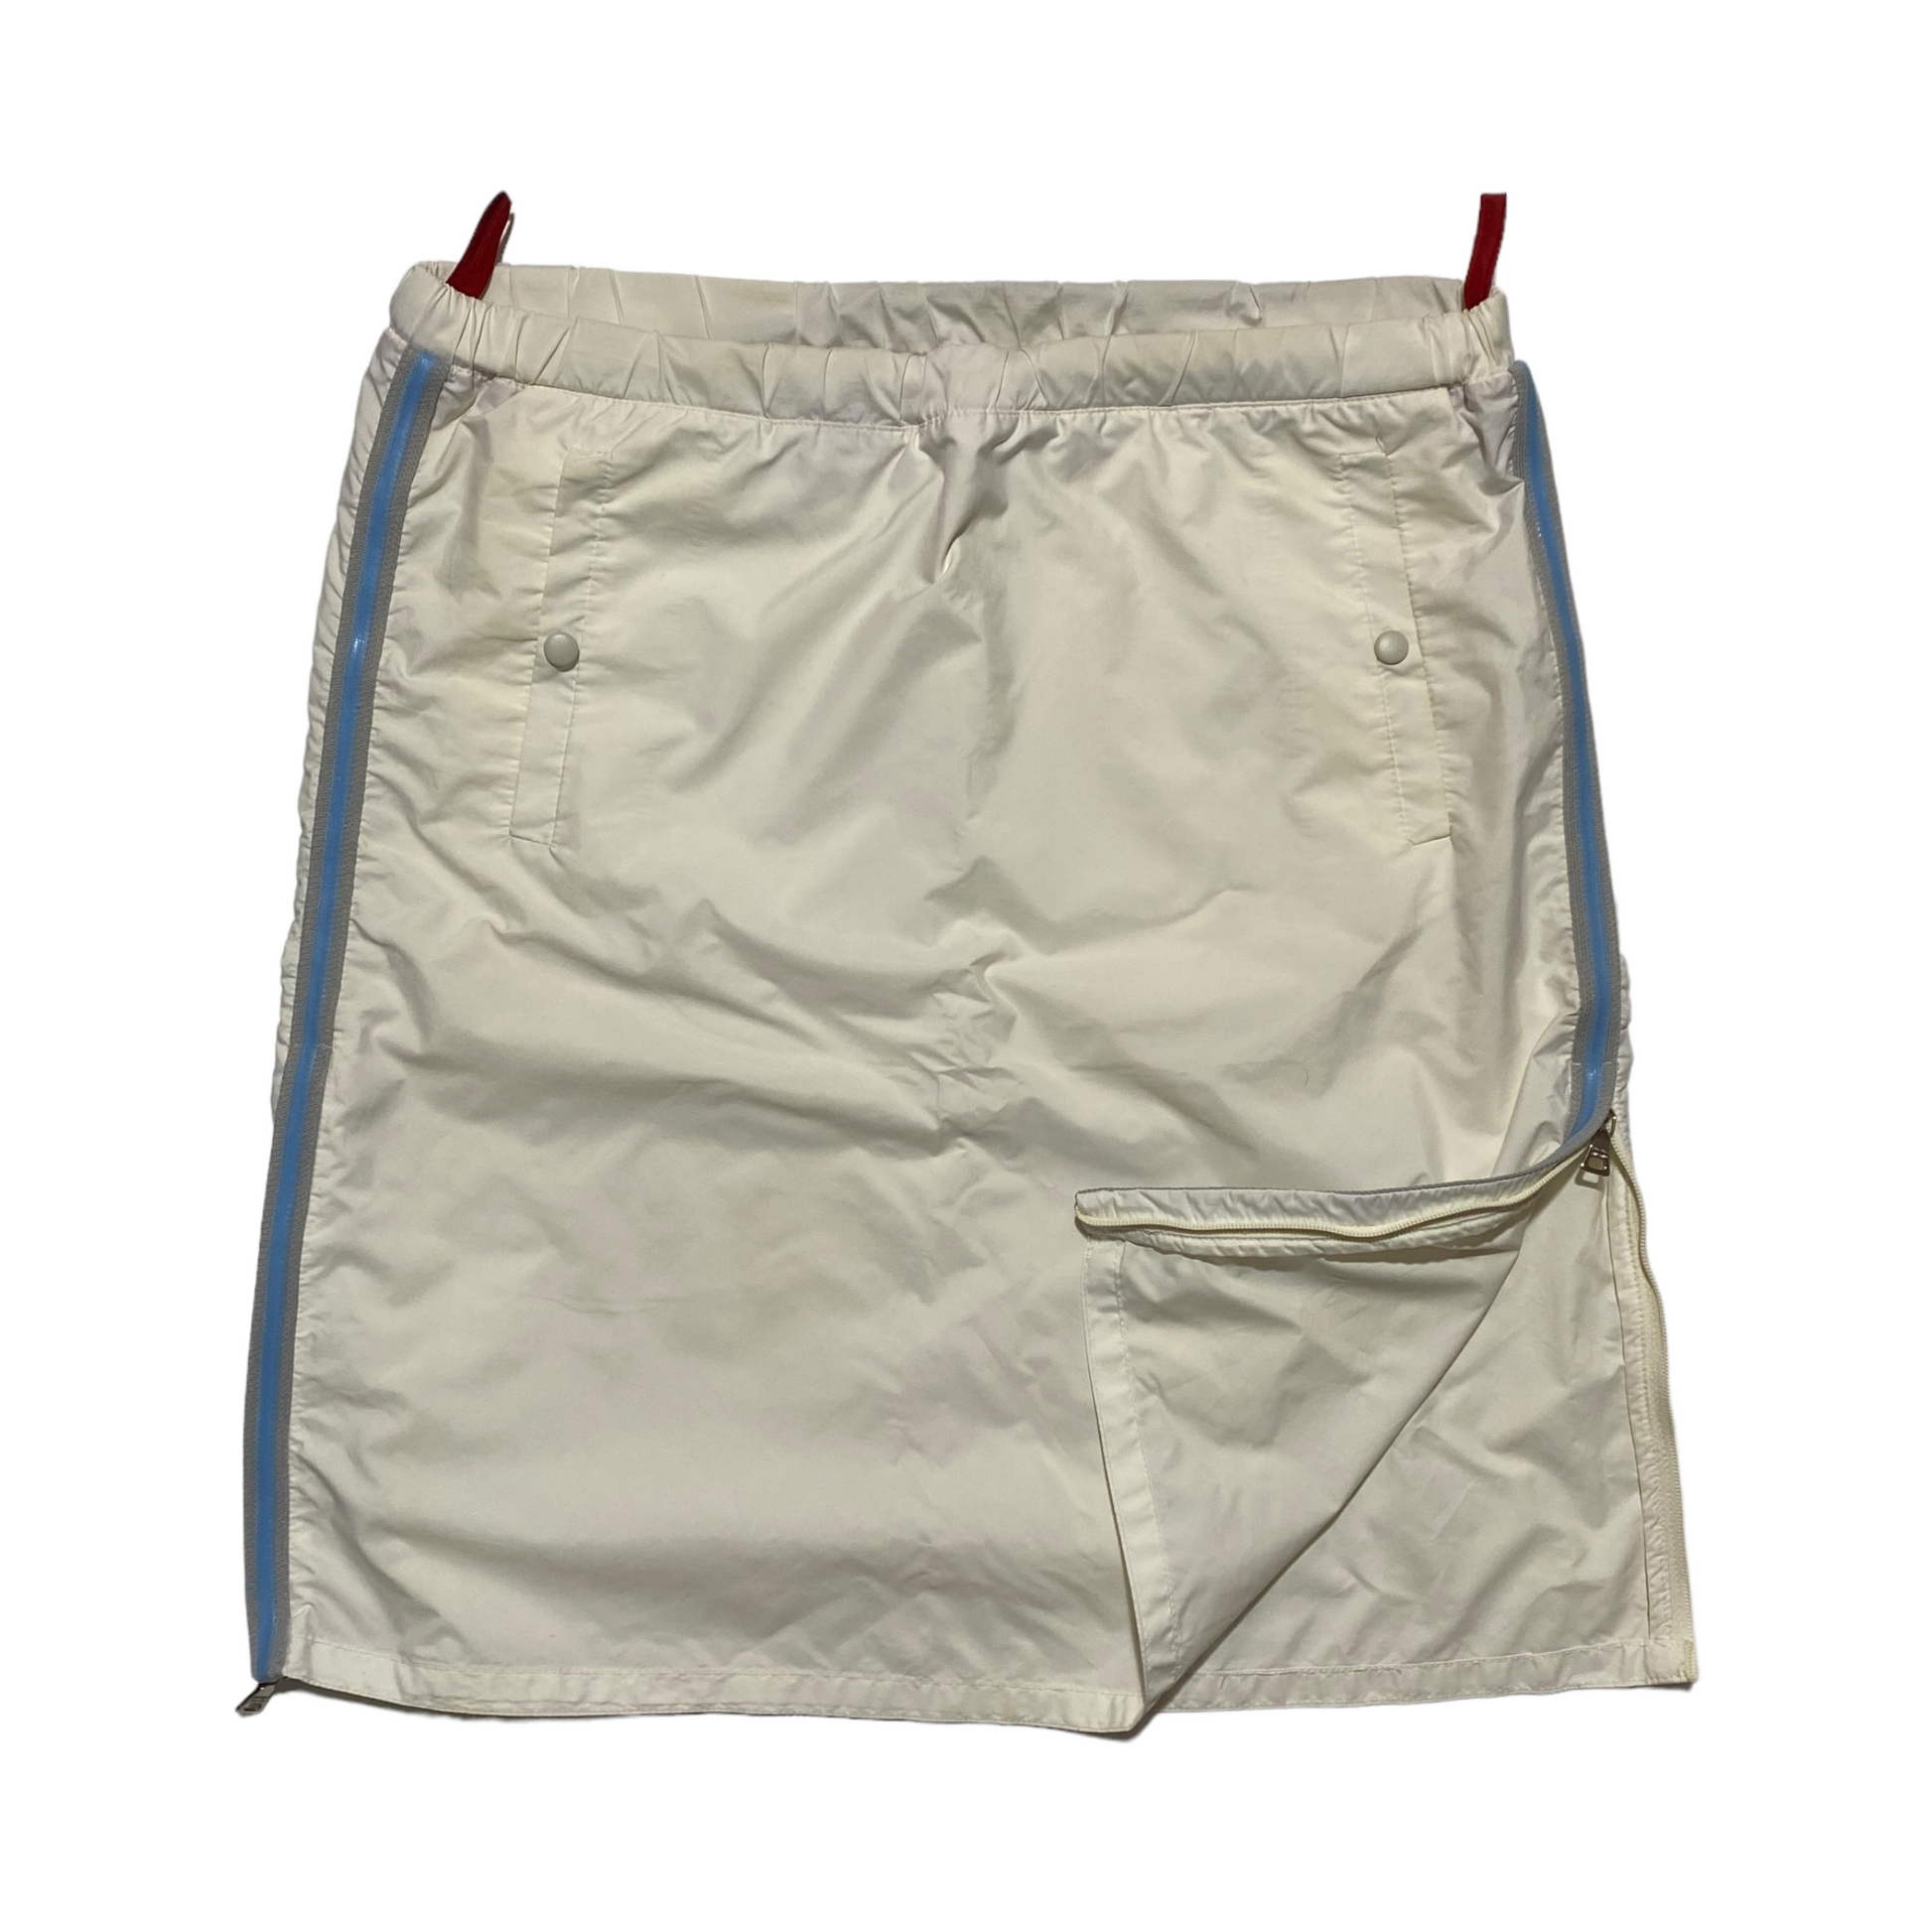 S/S 2000 Prada Sport Skirt (38W) – Bintagged